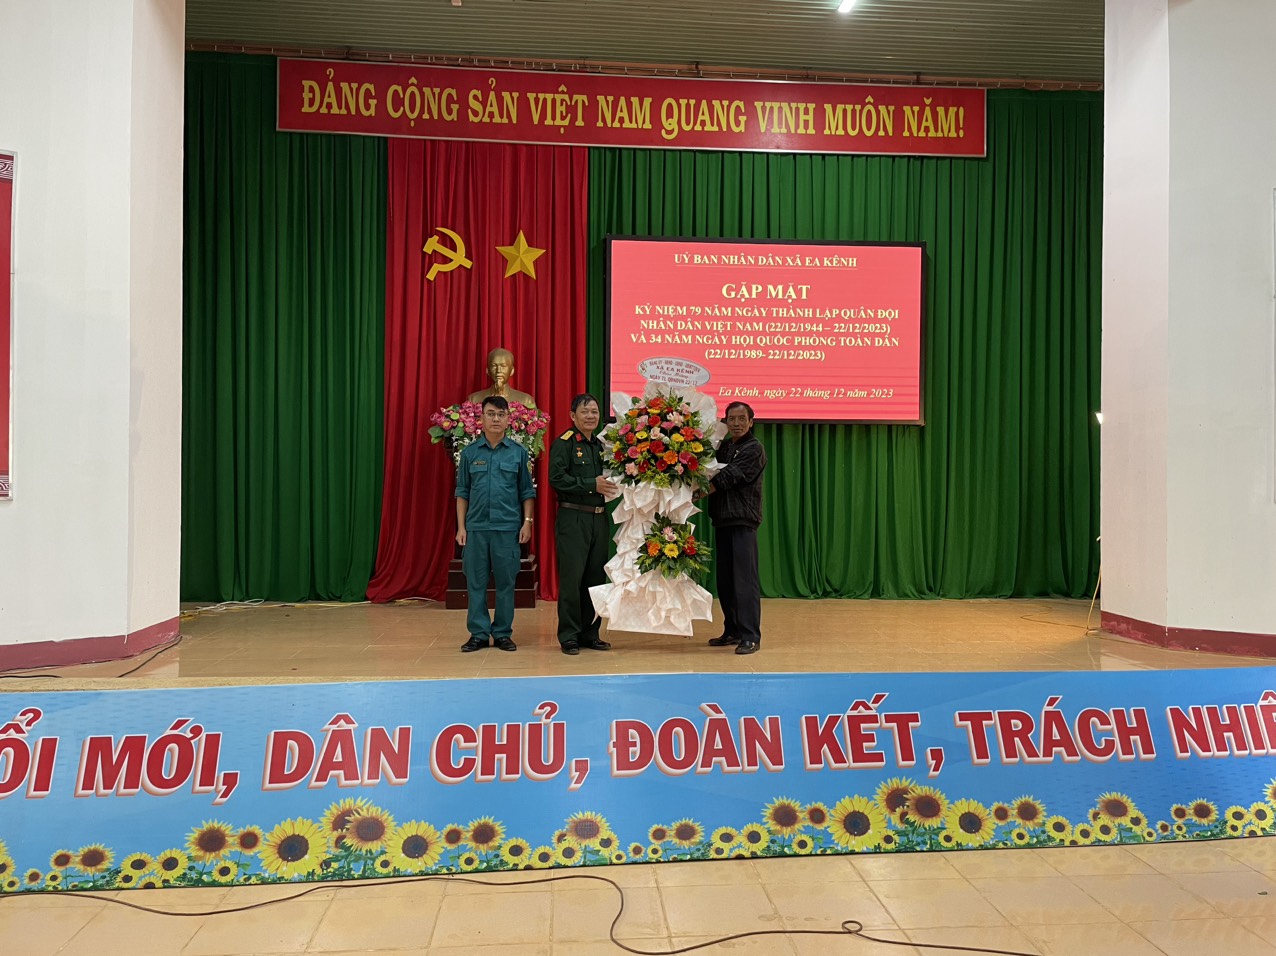 Đảng ủy – HĐND – UBND – UBMTTQVN xã Ea Kênh tổ chức Gặp mặt kỷ niệm 79 năm Ngày thành lập Quân đội Nhân dân Việt Nam (22/12/1944 – 22/12/2023) và 34 năm Ngày Hội Quốc phòng toàn dân (22/12/1989 – 22/12/2023)